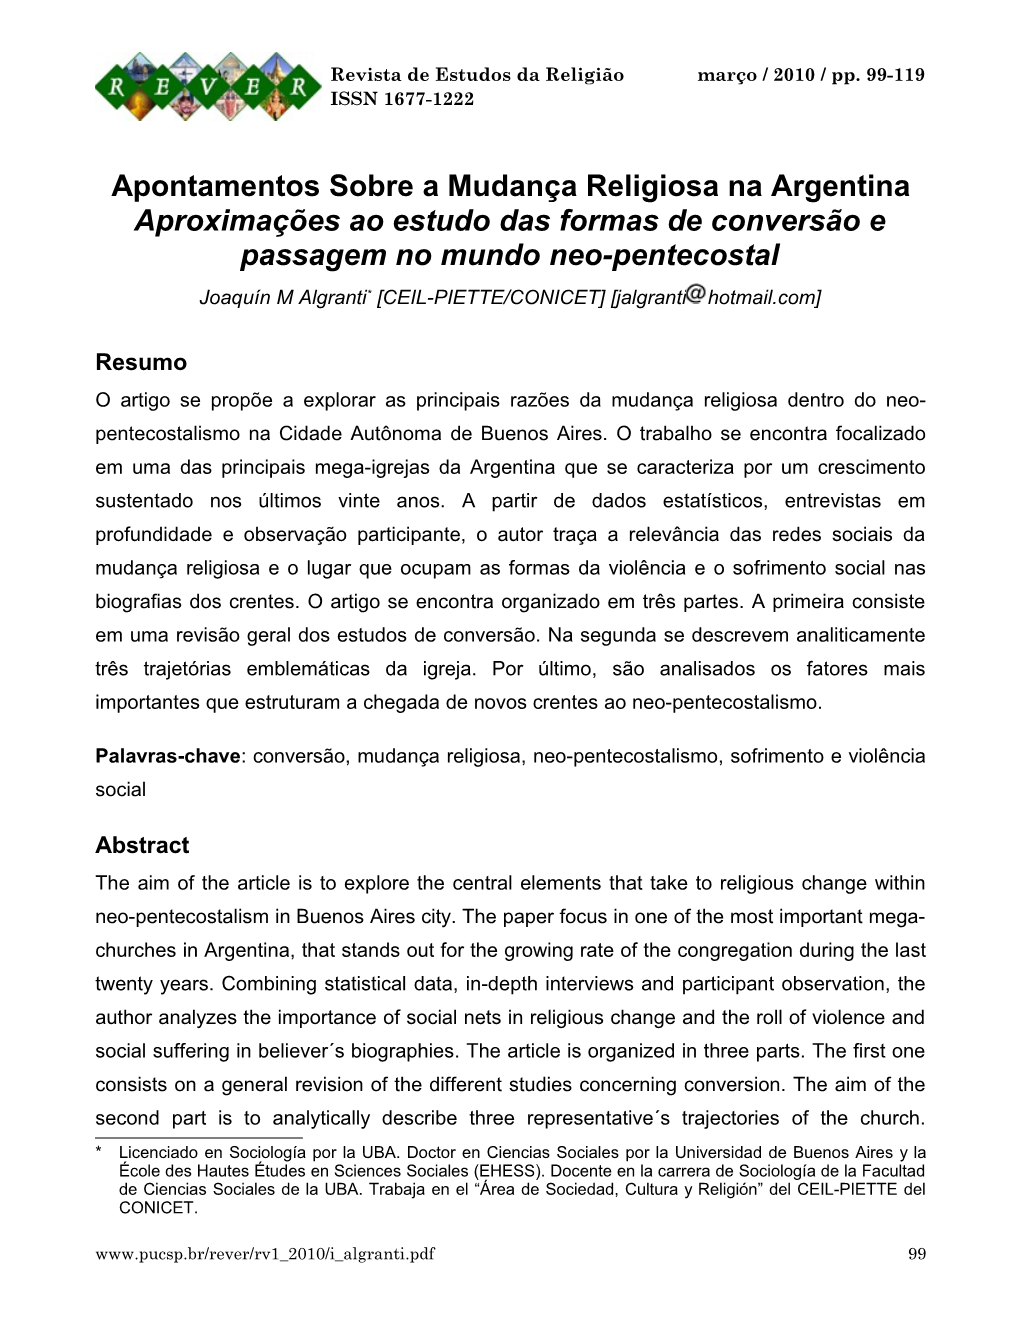 Apontamentos Sobre a Mudança Religiosa Na Argentina